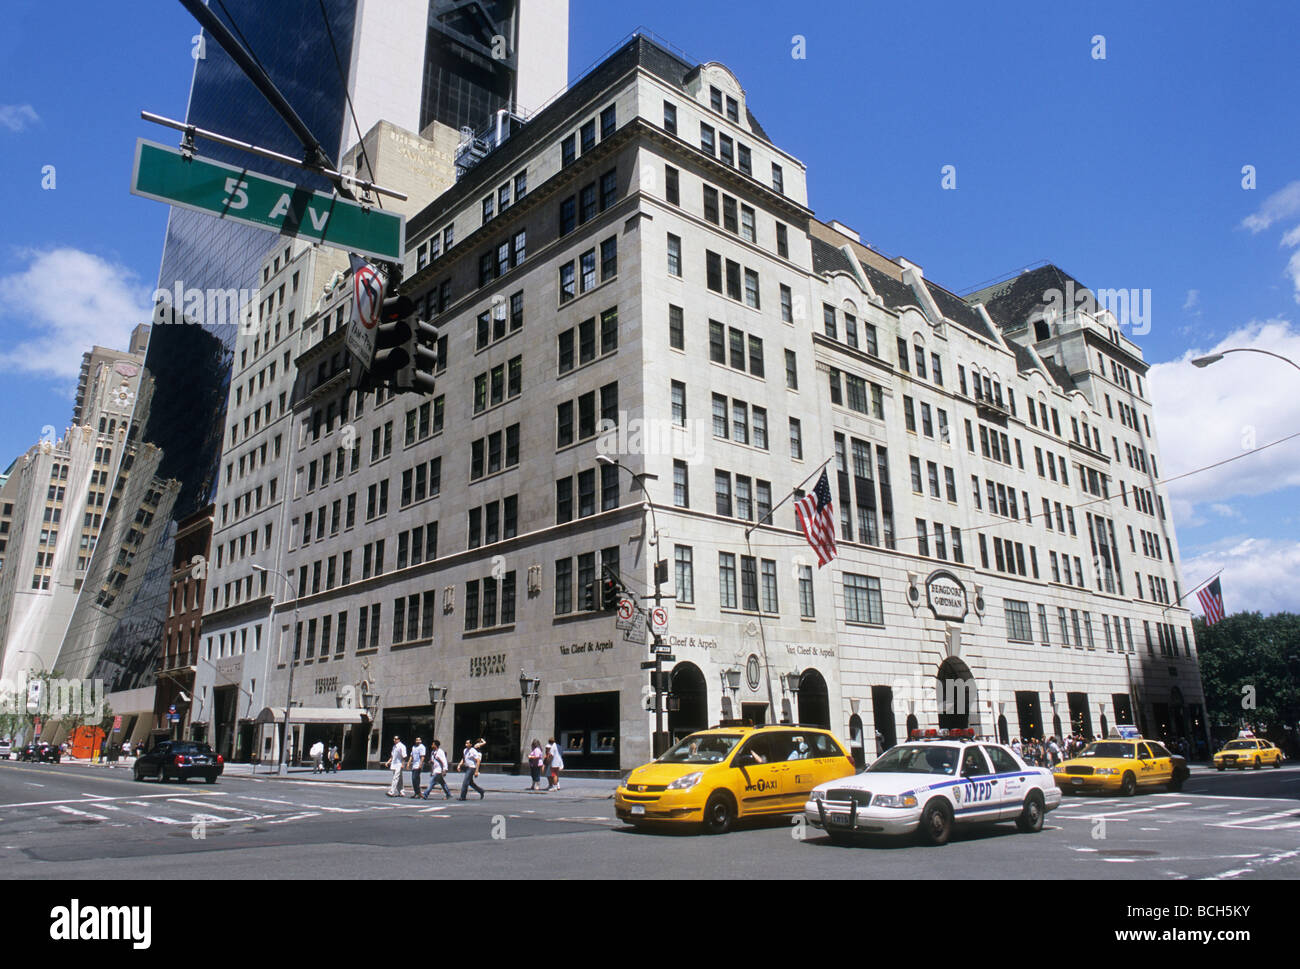 Bergdorf Goodman store in New York City Stock Photo - Alamy